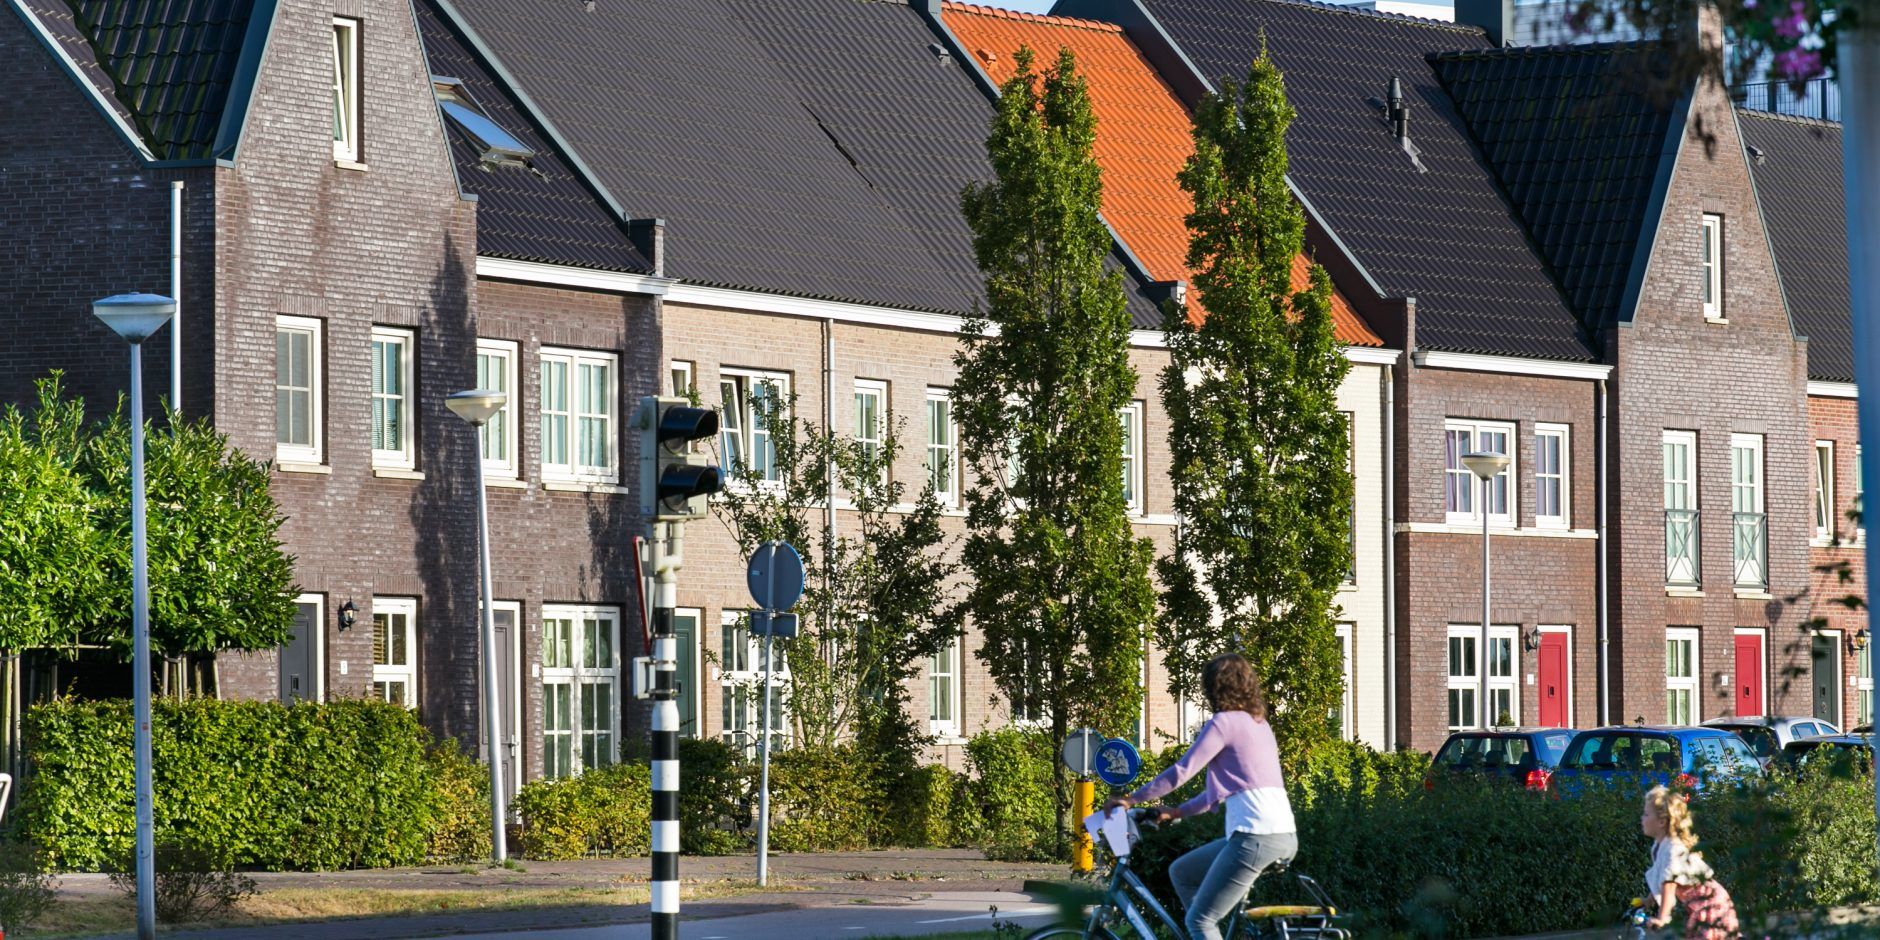 Sfeerfoto rijtjeshuizen in wijk de hoven met fietser